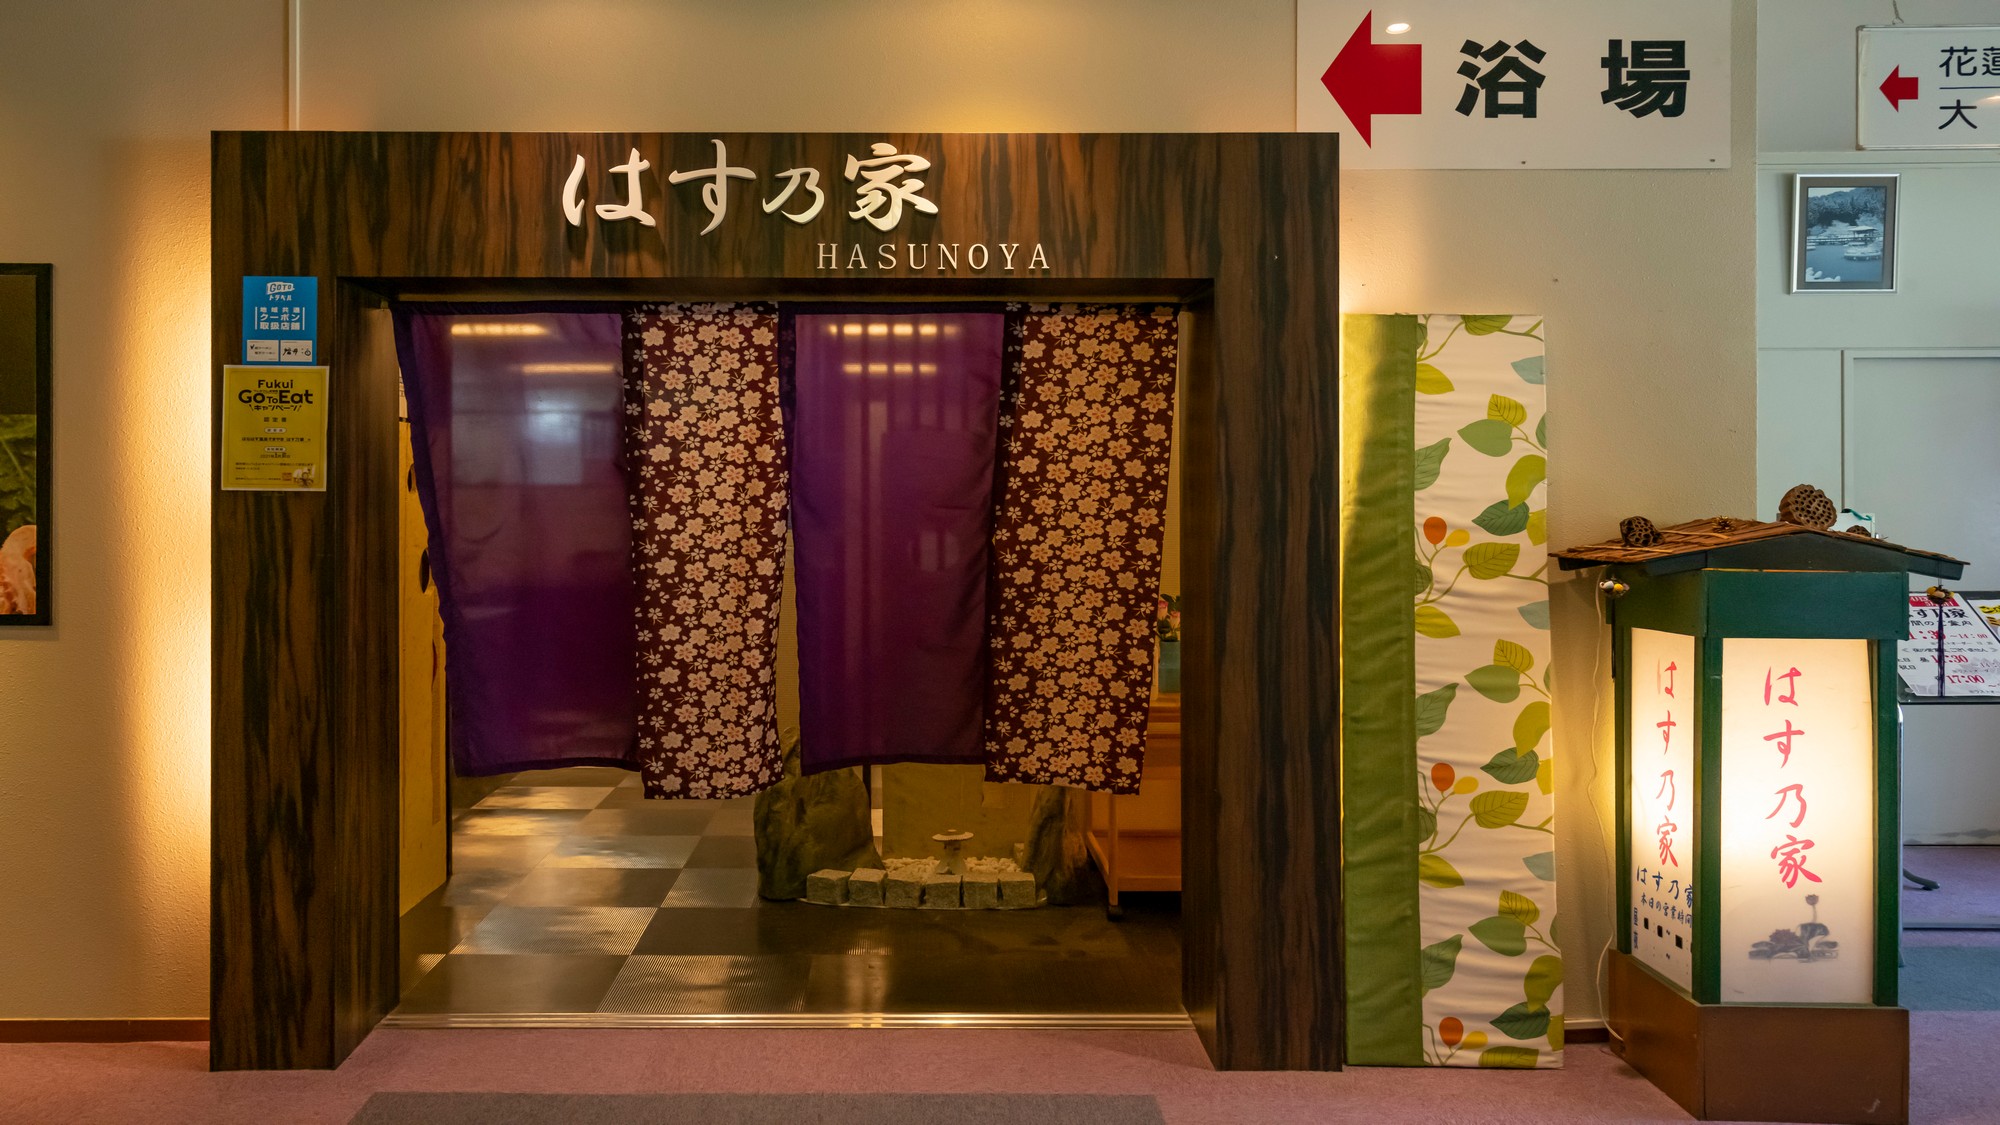 お食事処の入口はこちら。福井の美味しいお食事をご用意してお待ちしております。